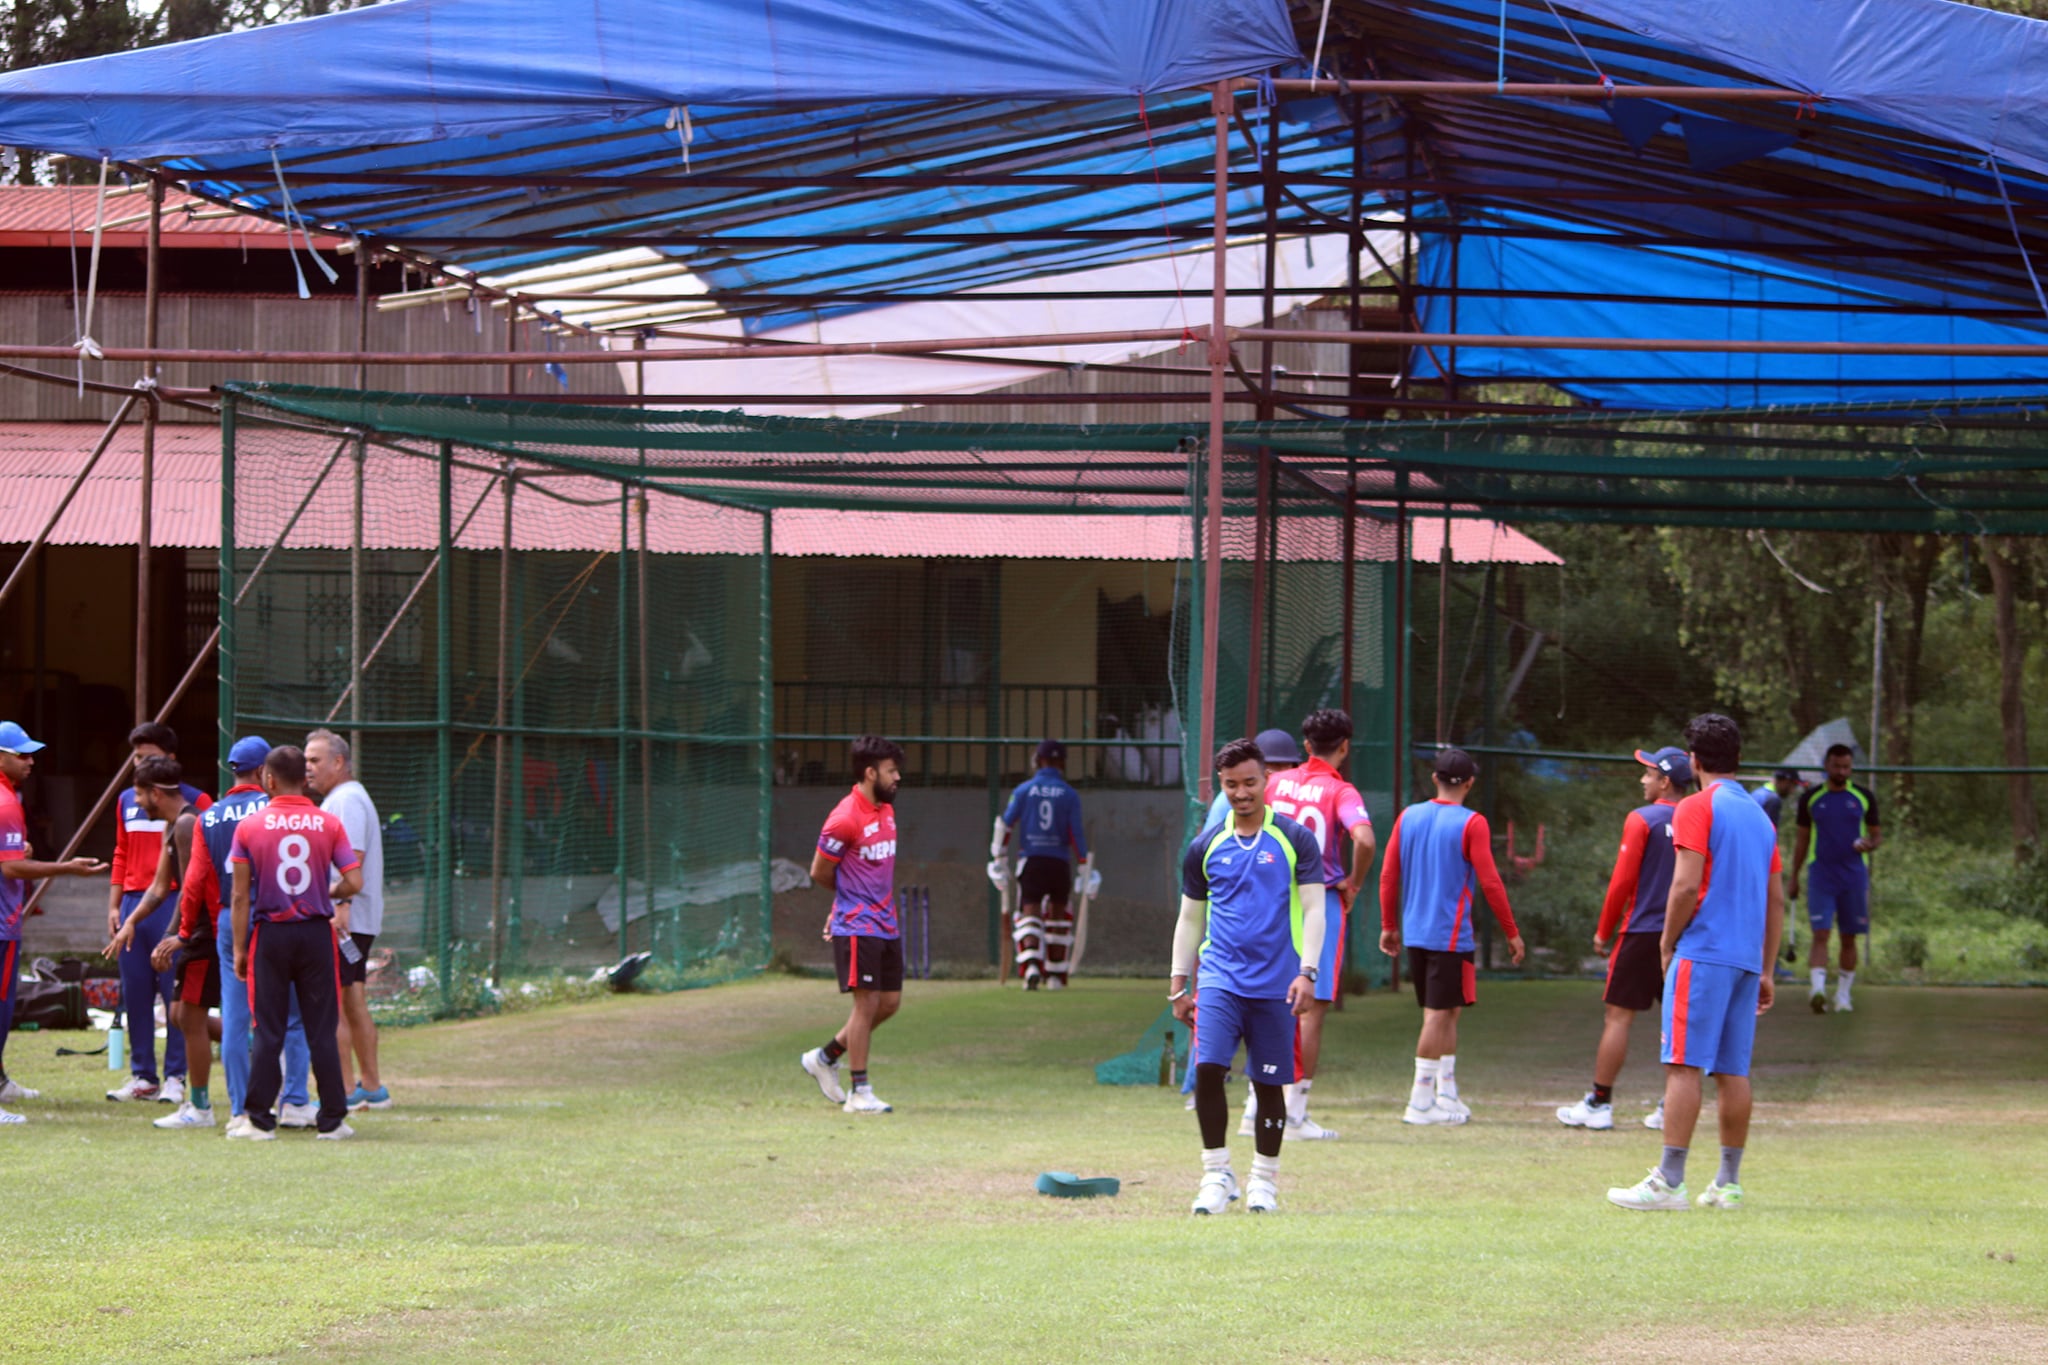 नेपाली क्रिकेट टोलीले थाल्यो विश्व क्रिकेट लिग–२ को अभ्यास खेल